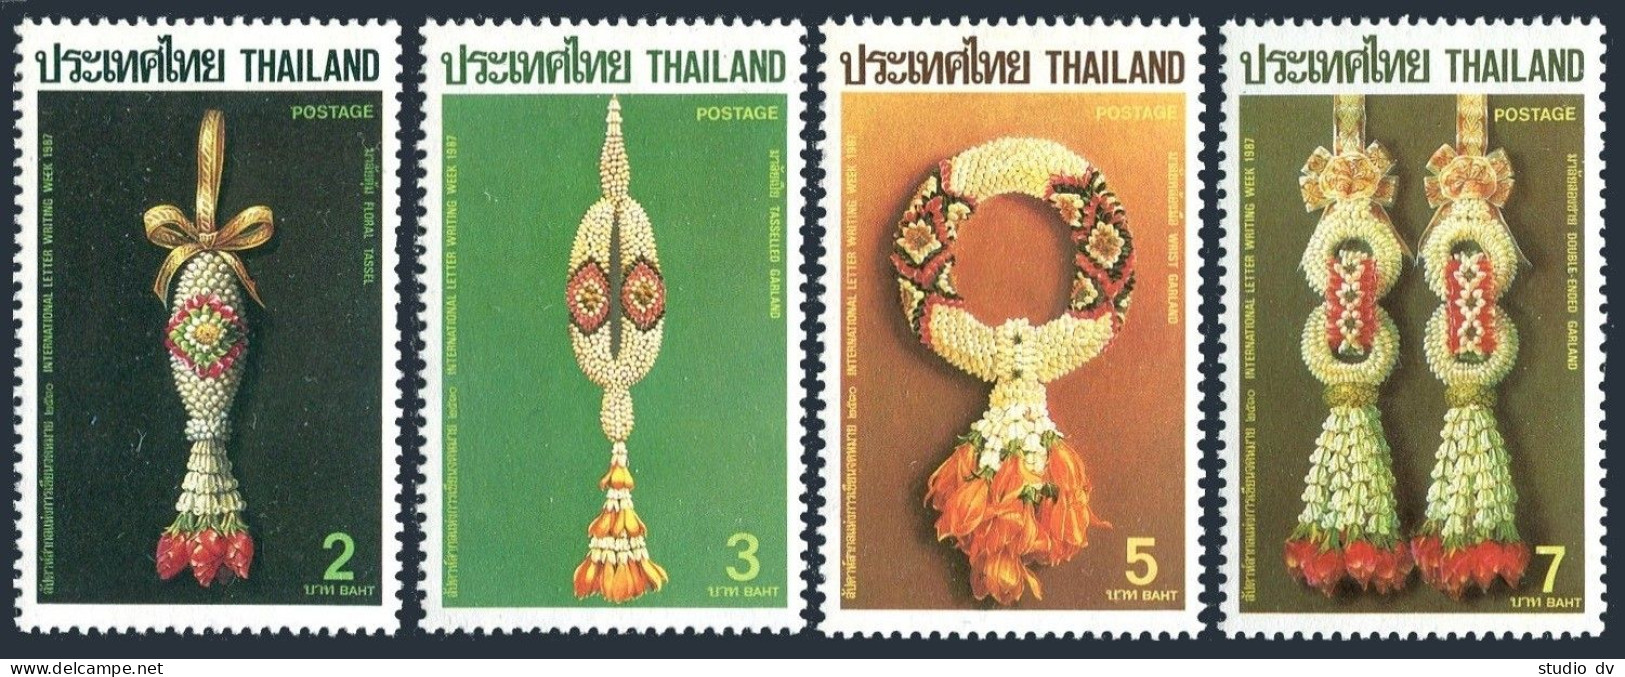 Thailand 1192-1195,MNH.Michel 1216-1219. Letter Week,1987. Floral Garlands. - Thaïlande